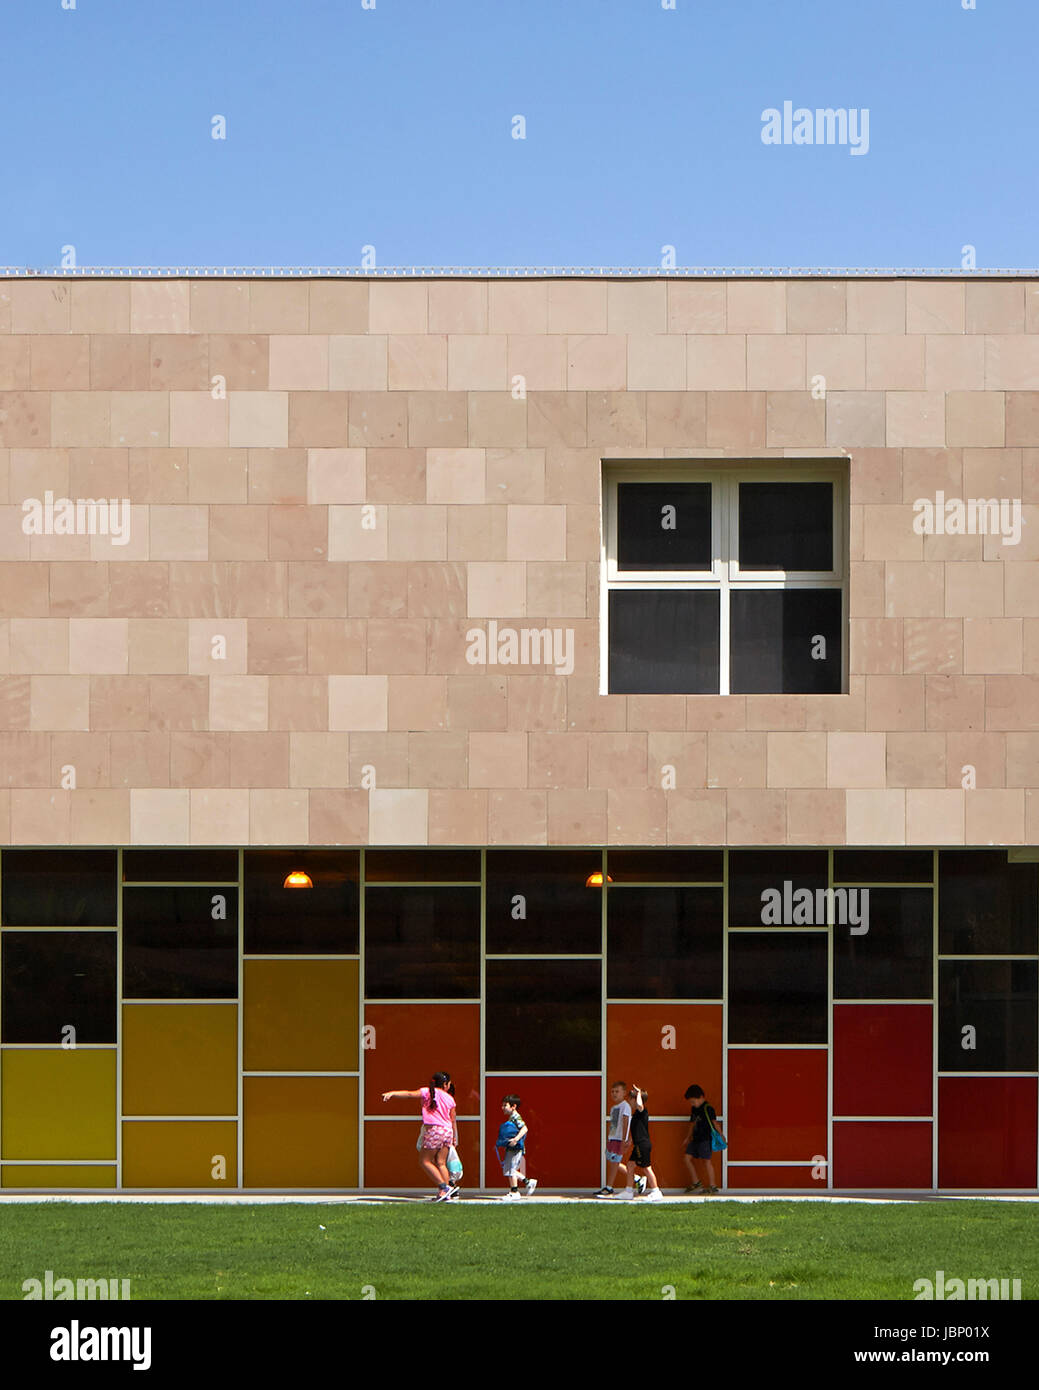 Vue extérieure vers la salle de sport. Victory Heights l'école primaire, Dubaï, Emirats Arabes Unis. Architecte : R +D Studio , 2016. Banque D'Images